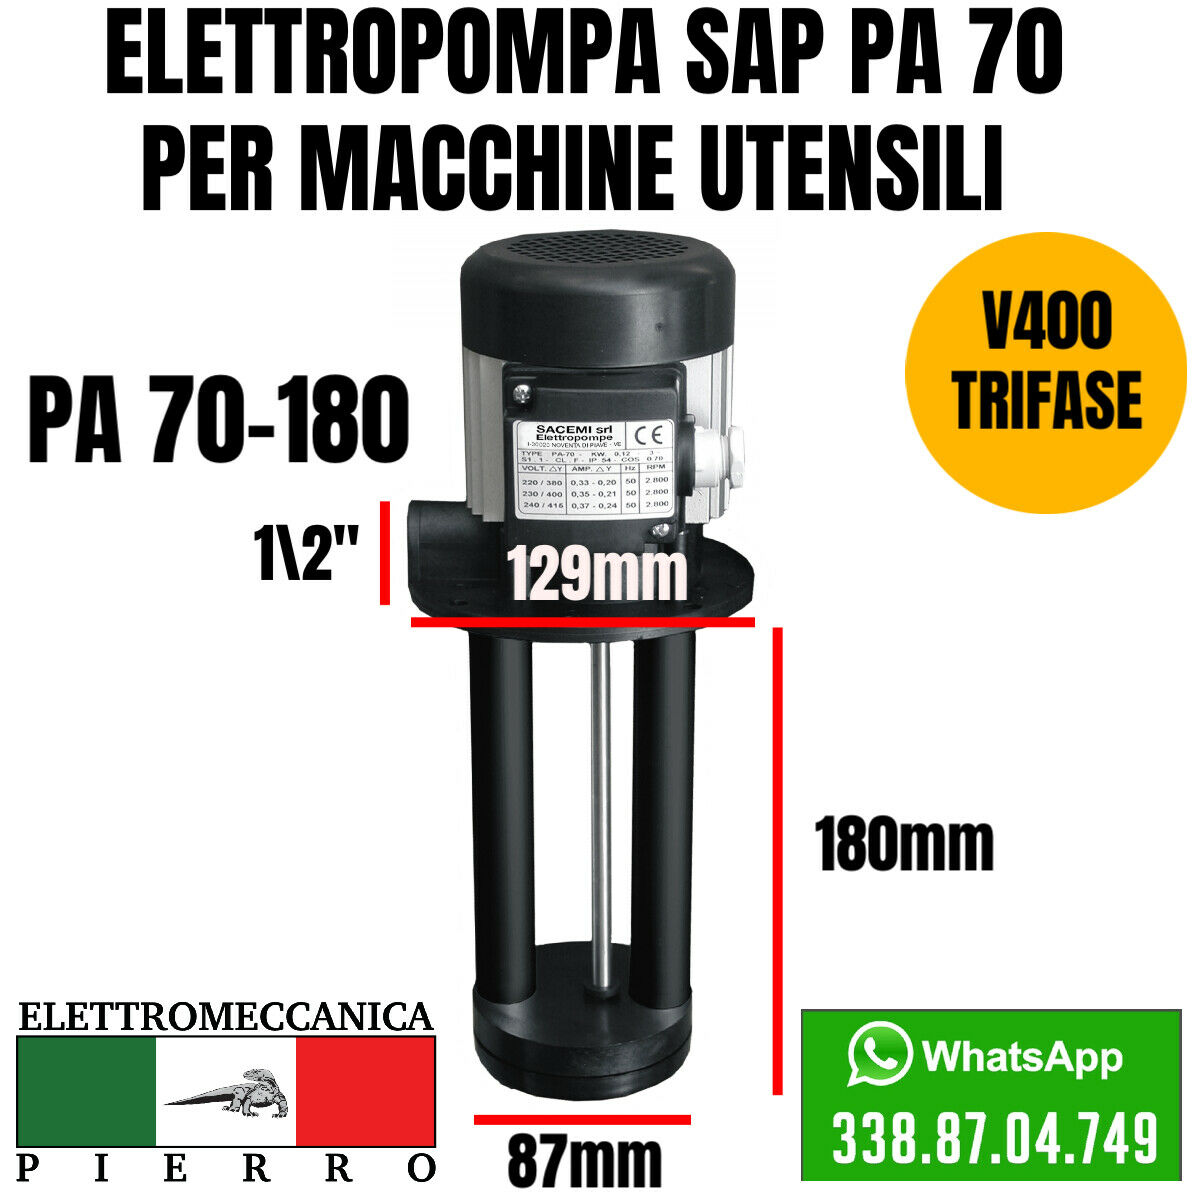 Logo elettromeccanica Pierro elettromeccanica express Elettropompa sacemi per macchine utensili SAP PA 70-180